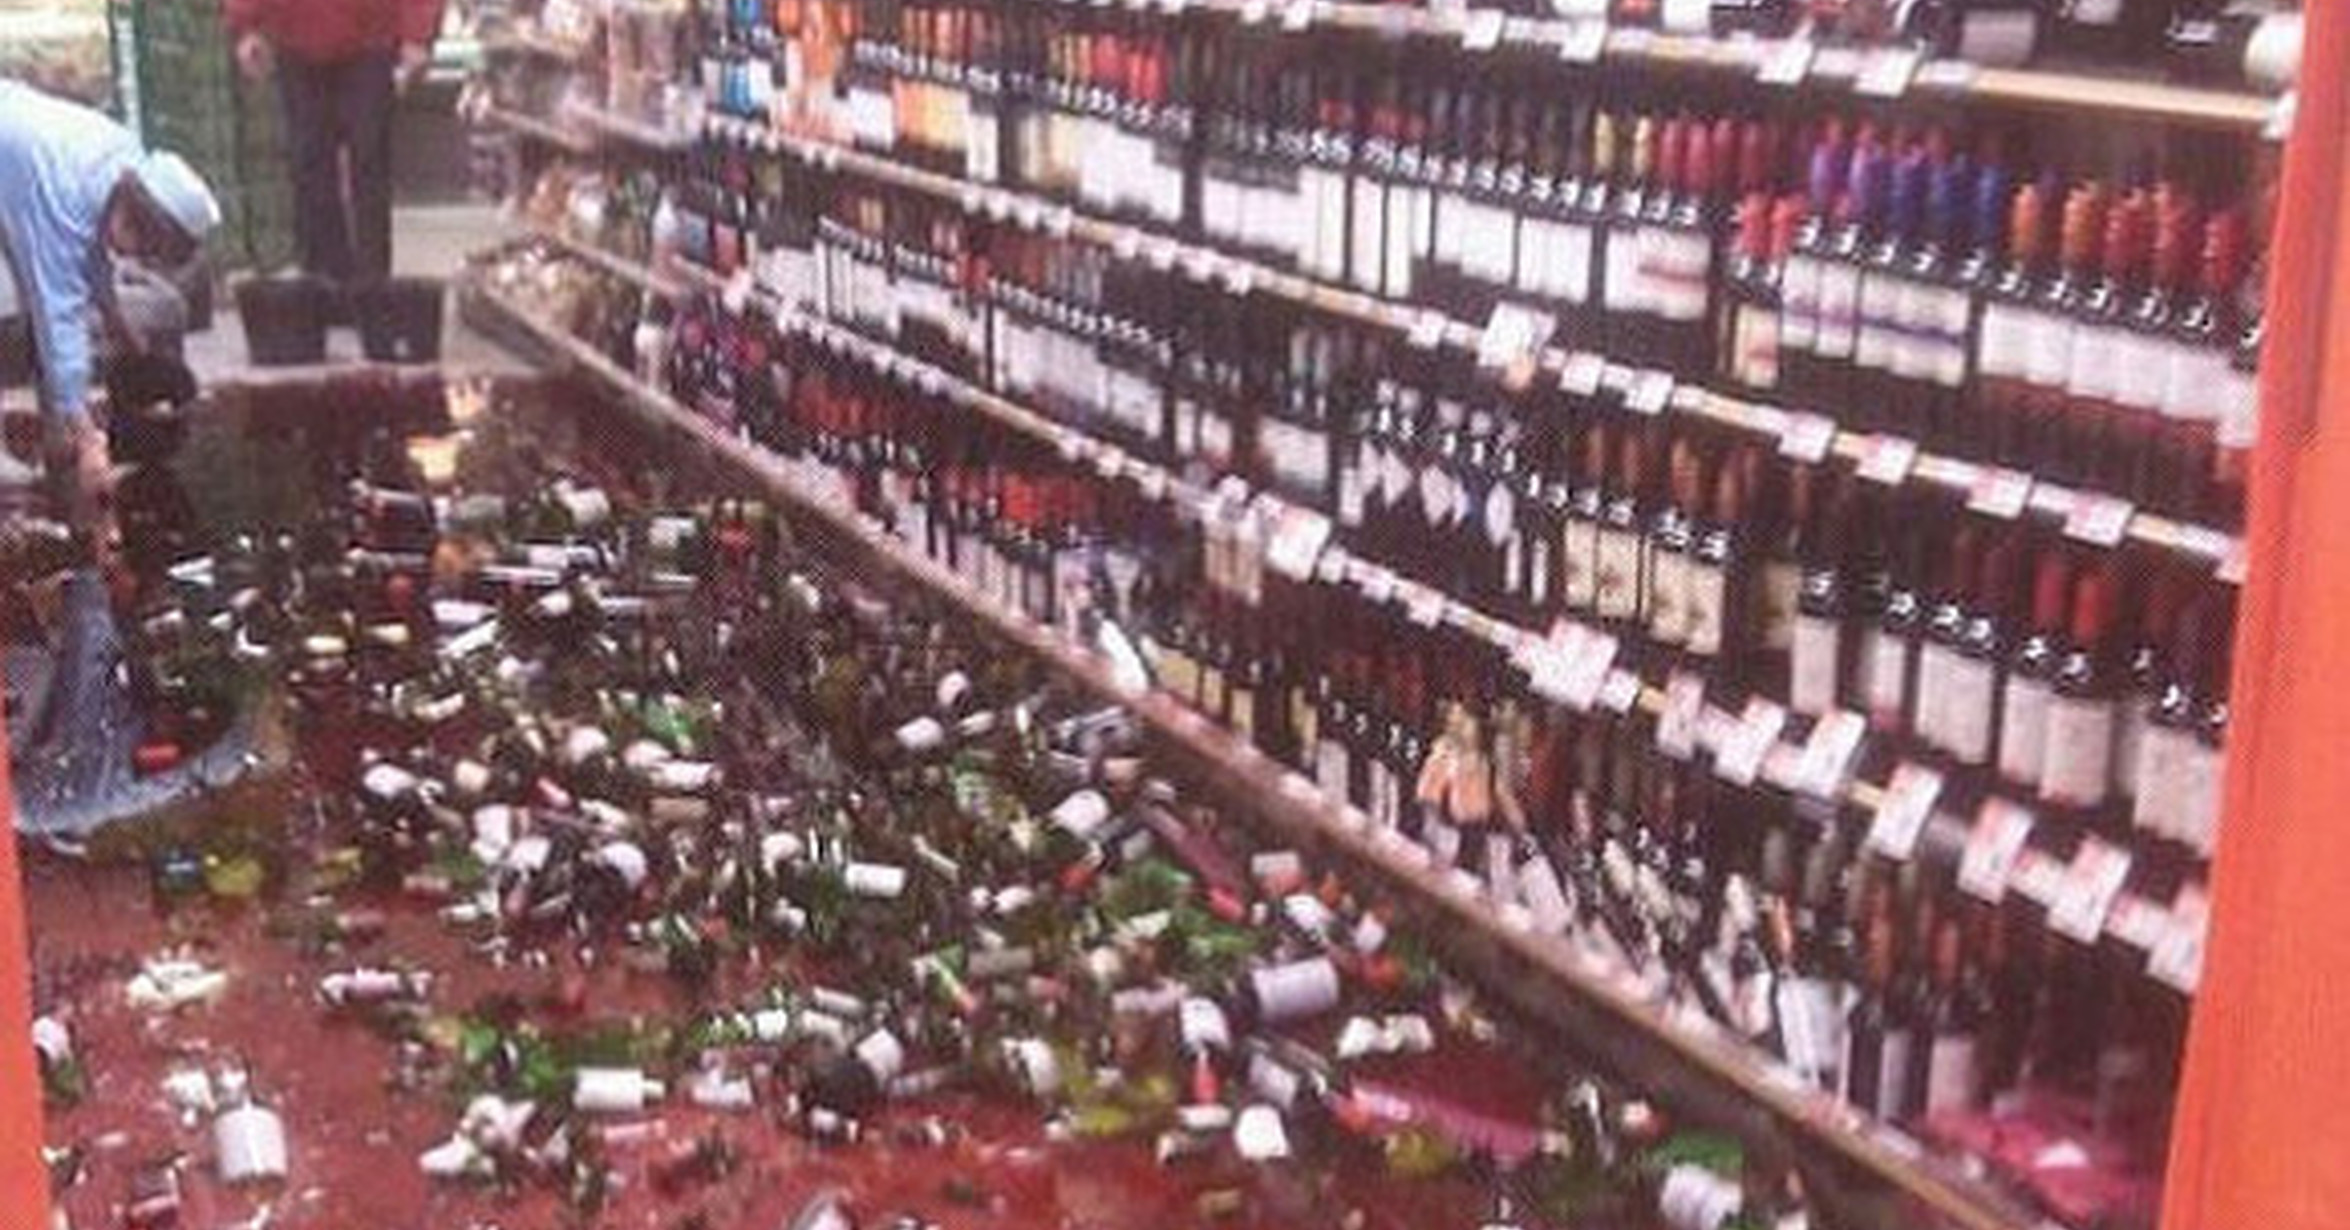 Разбитые бутылки в магазине. Разбитые бутылки вина в магазине.